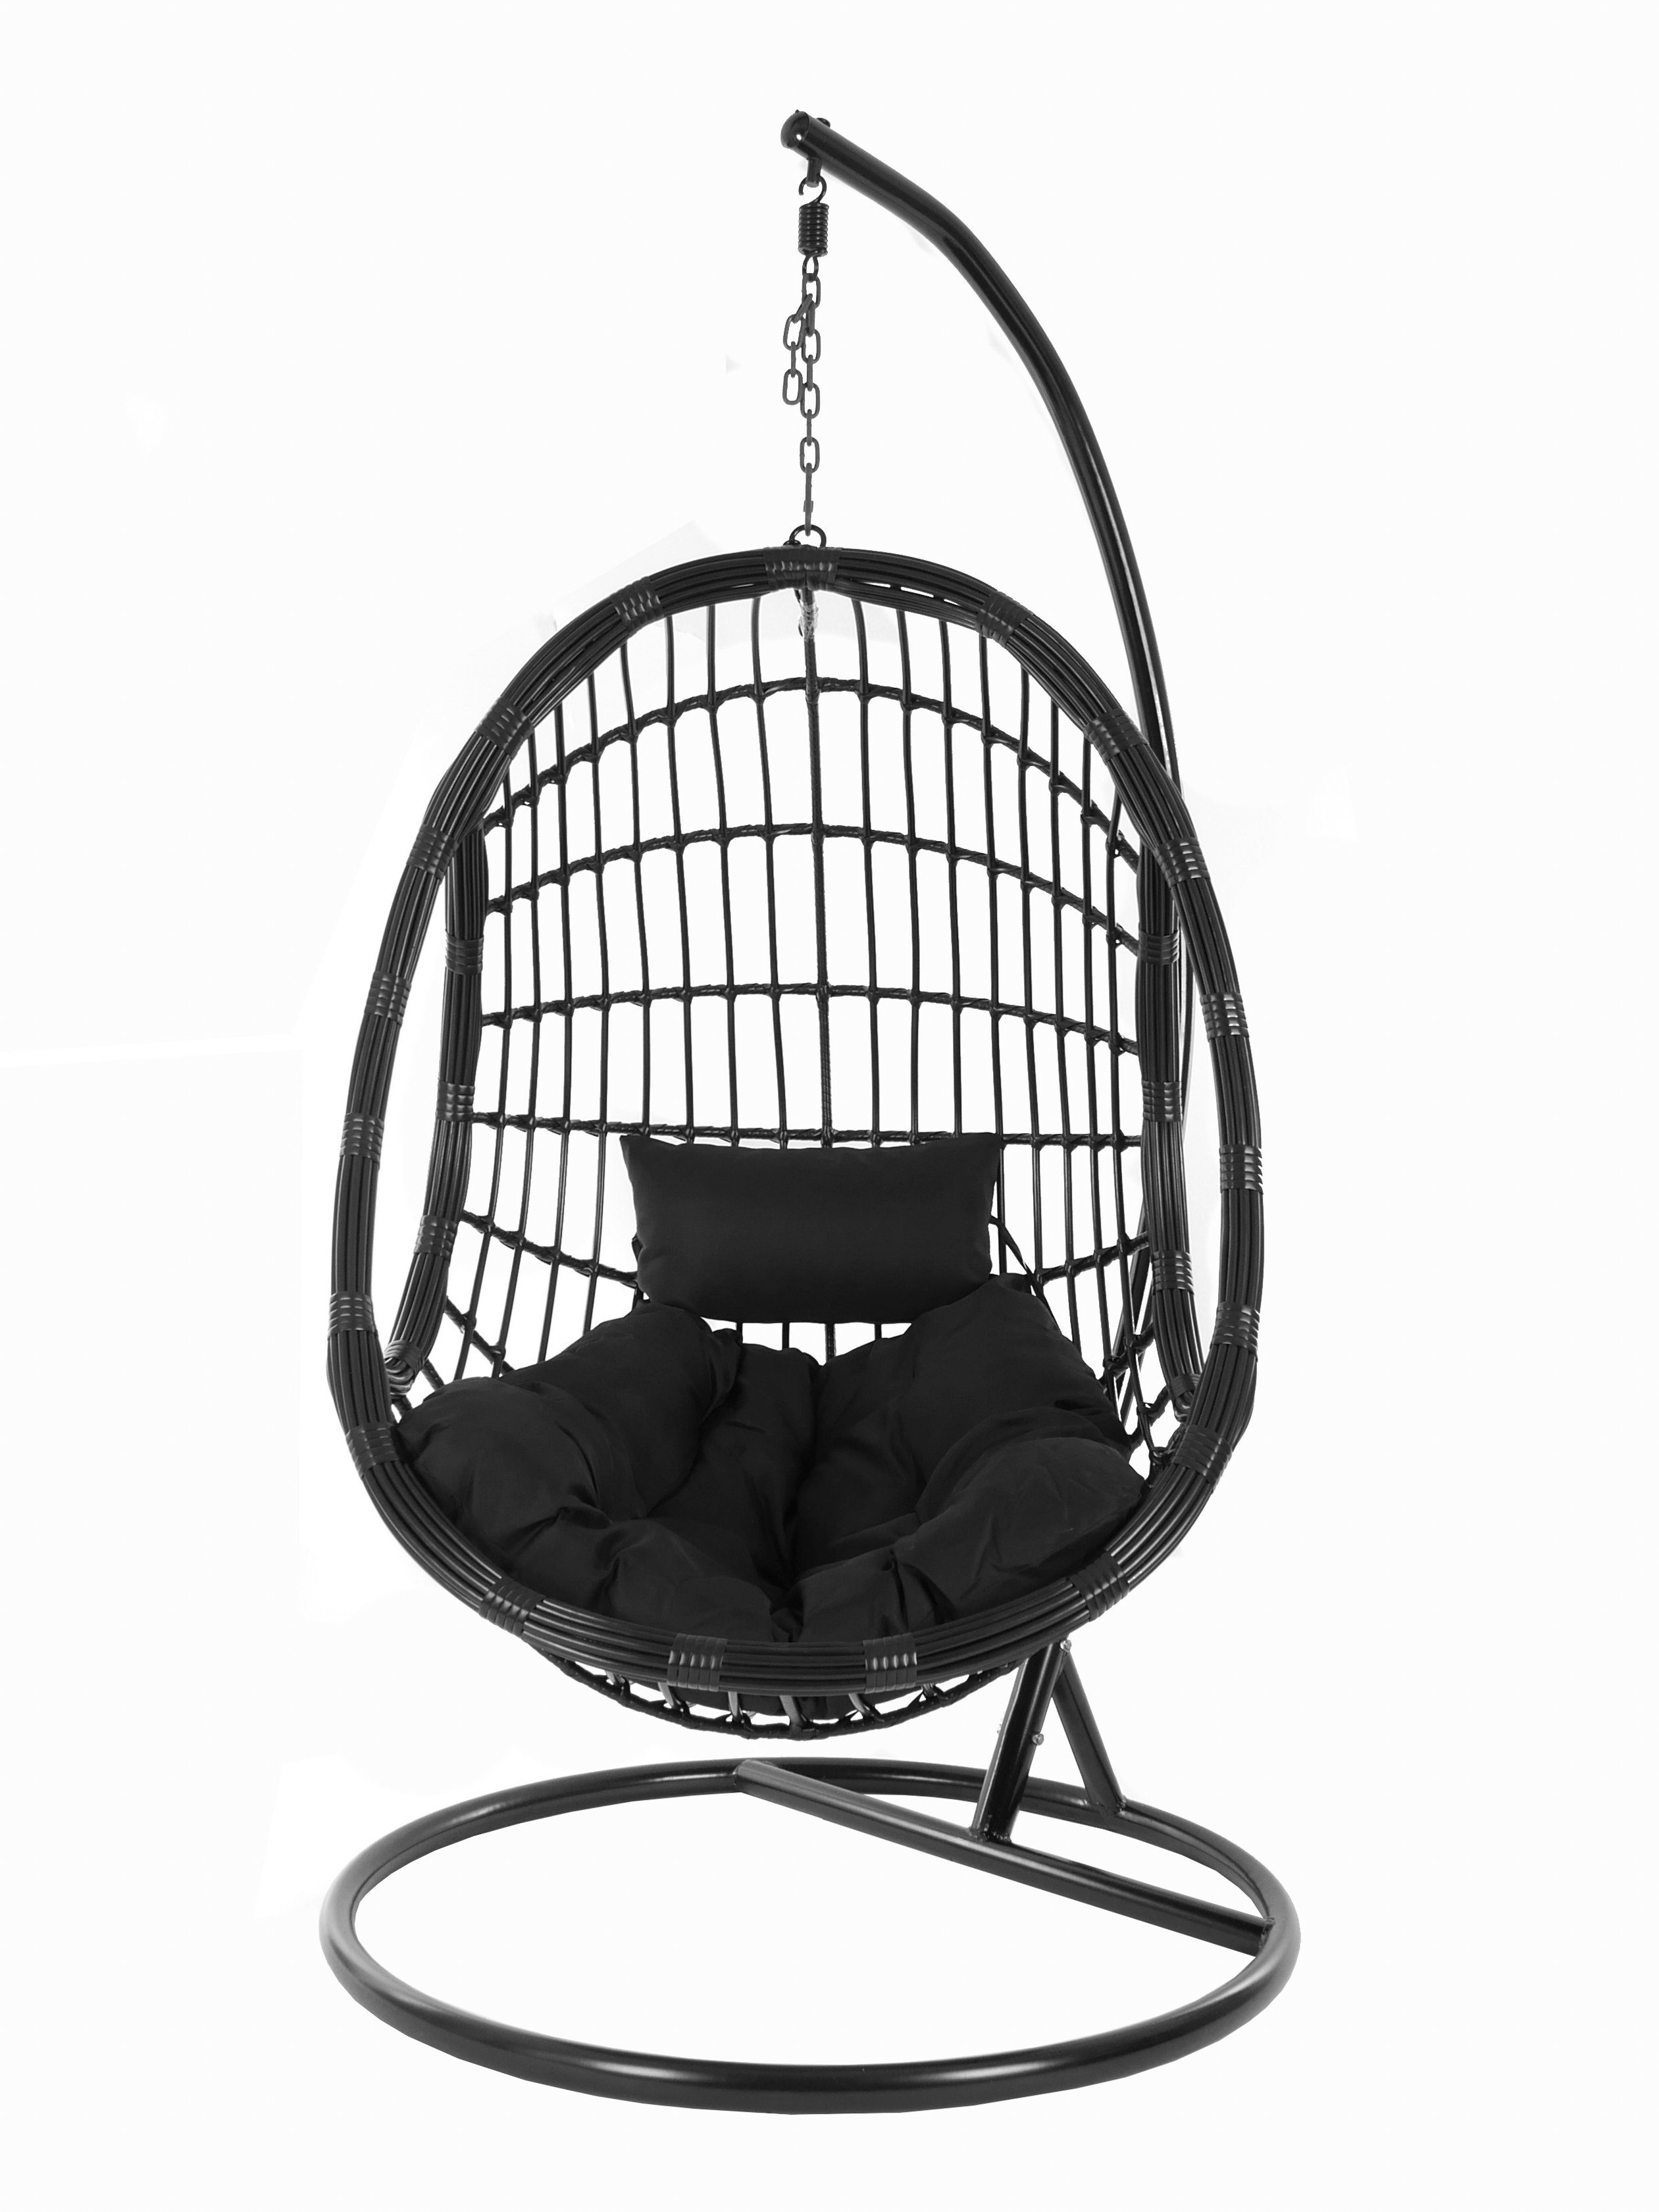 KIDEO Hängesessel PALMANOVA mit Hängesessel (9999 Chair, edles black) Kissen, Design Swing Gestell Loungemöbel, und black, schwarz, schwarz Schwebesessel